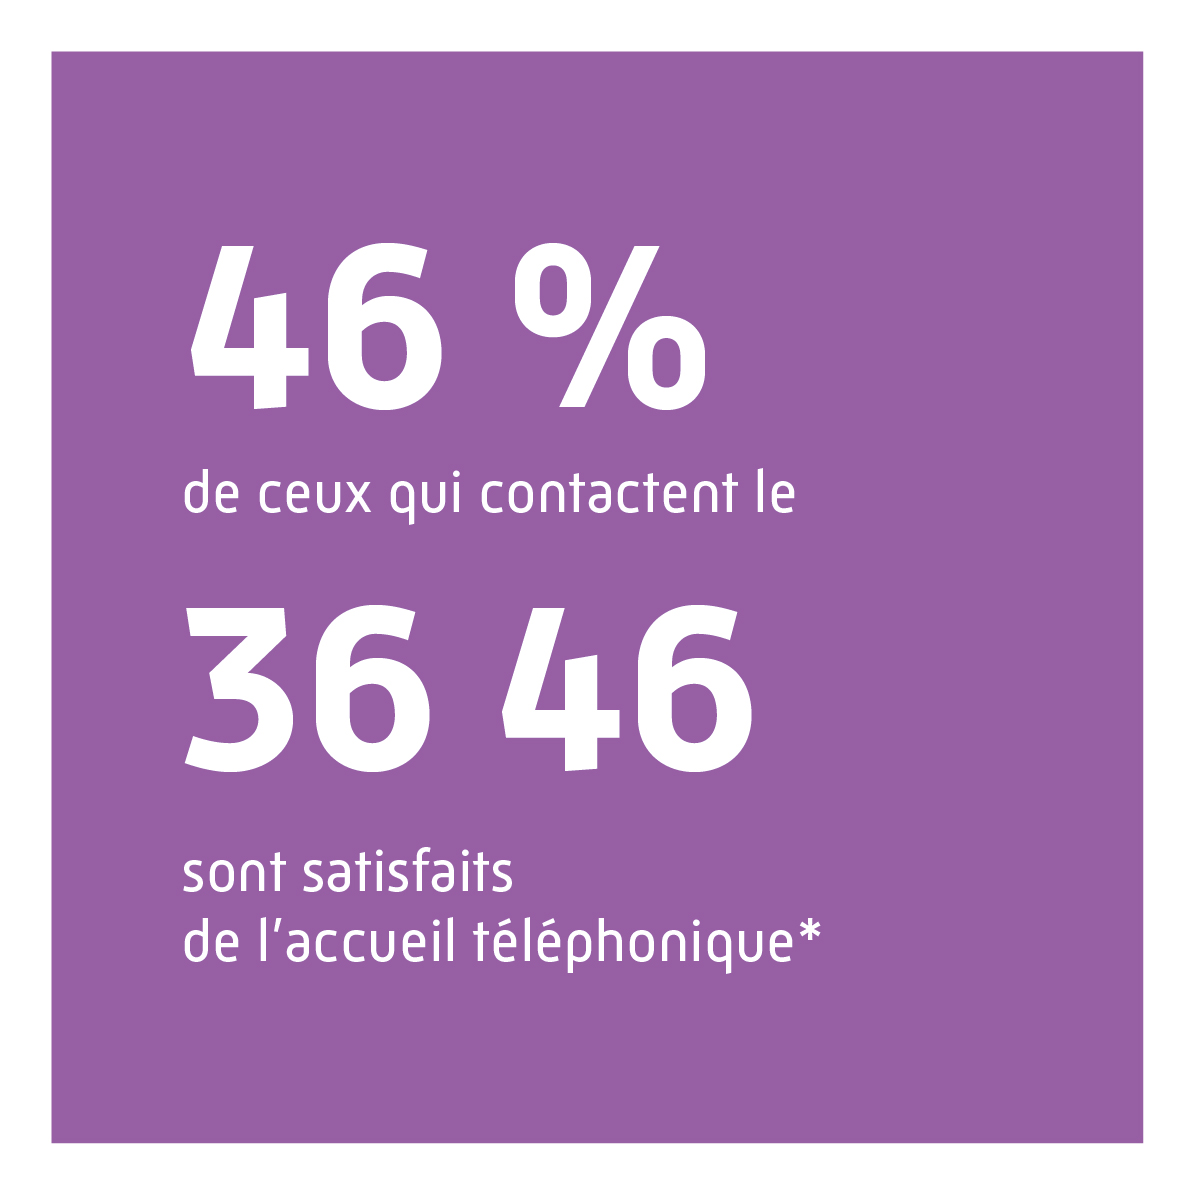 46% de ceux qui contactent le 36 46 sont satisfaits de l'accueil téléphonique.*